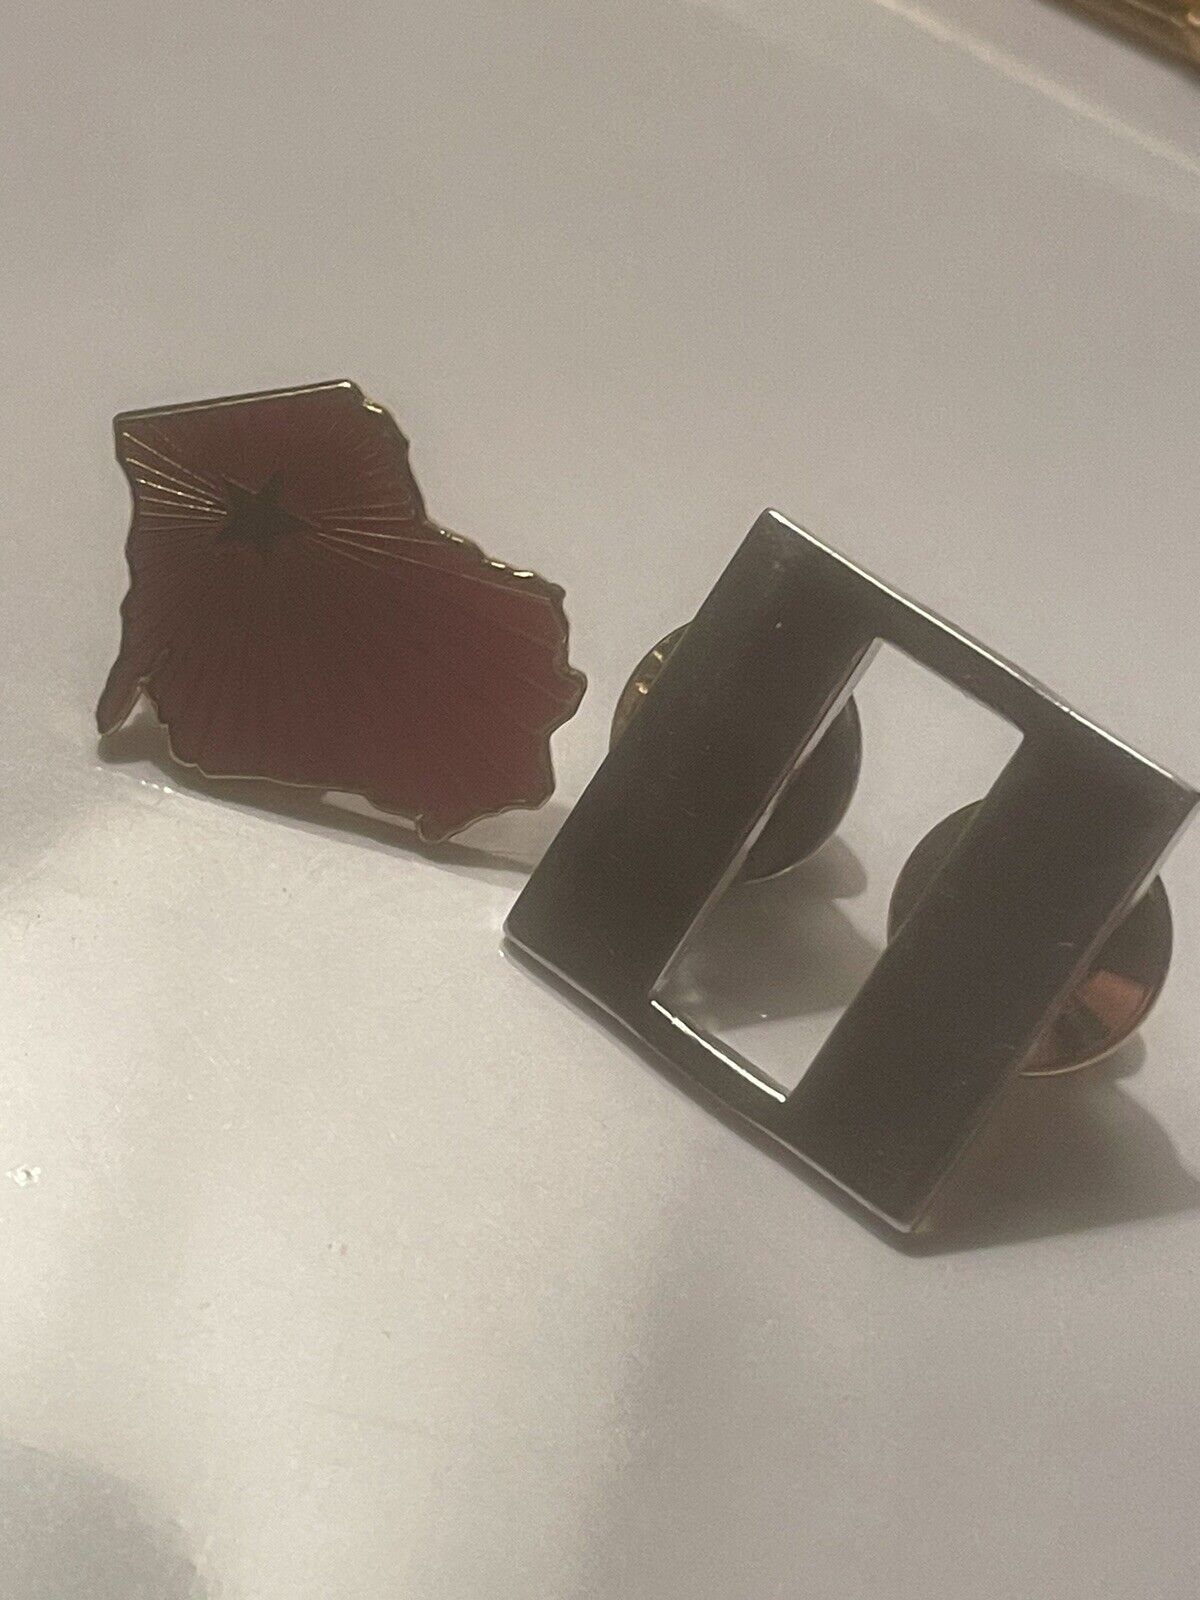 2 Vintage Lapel Pins Rare